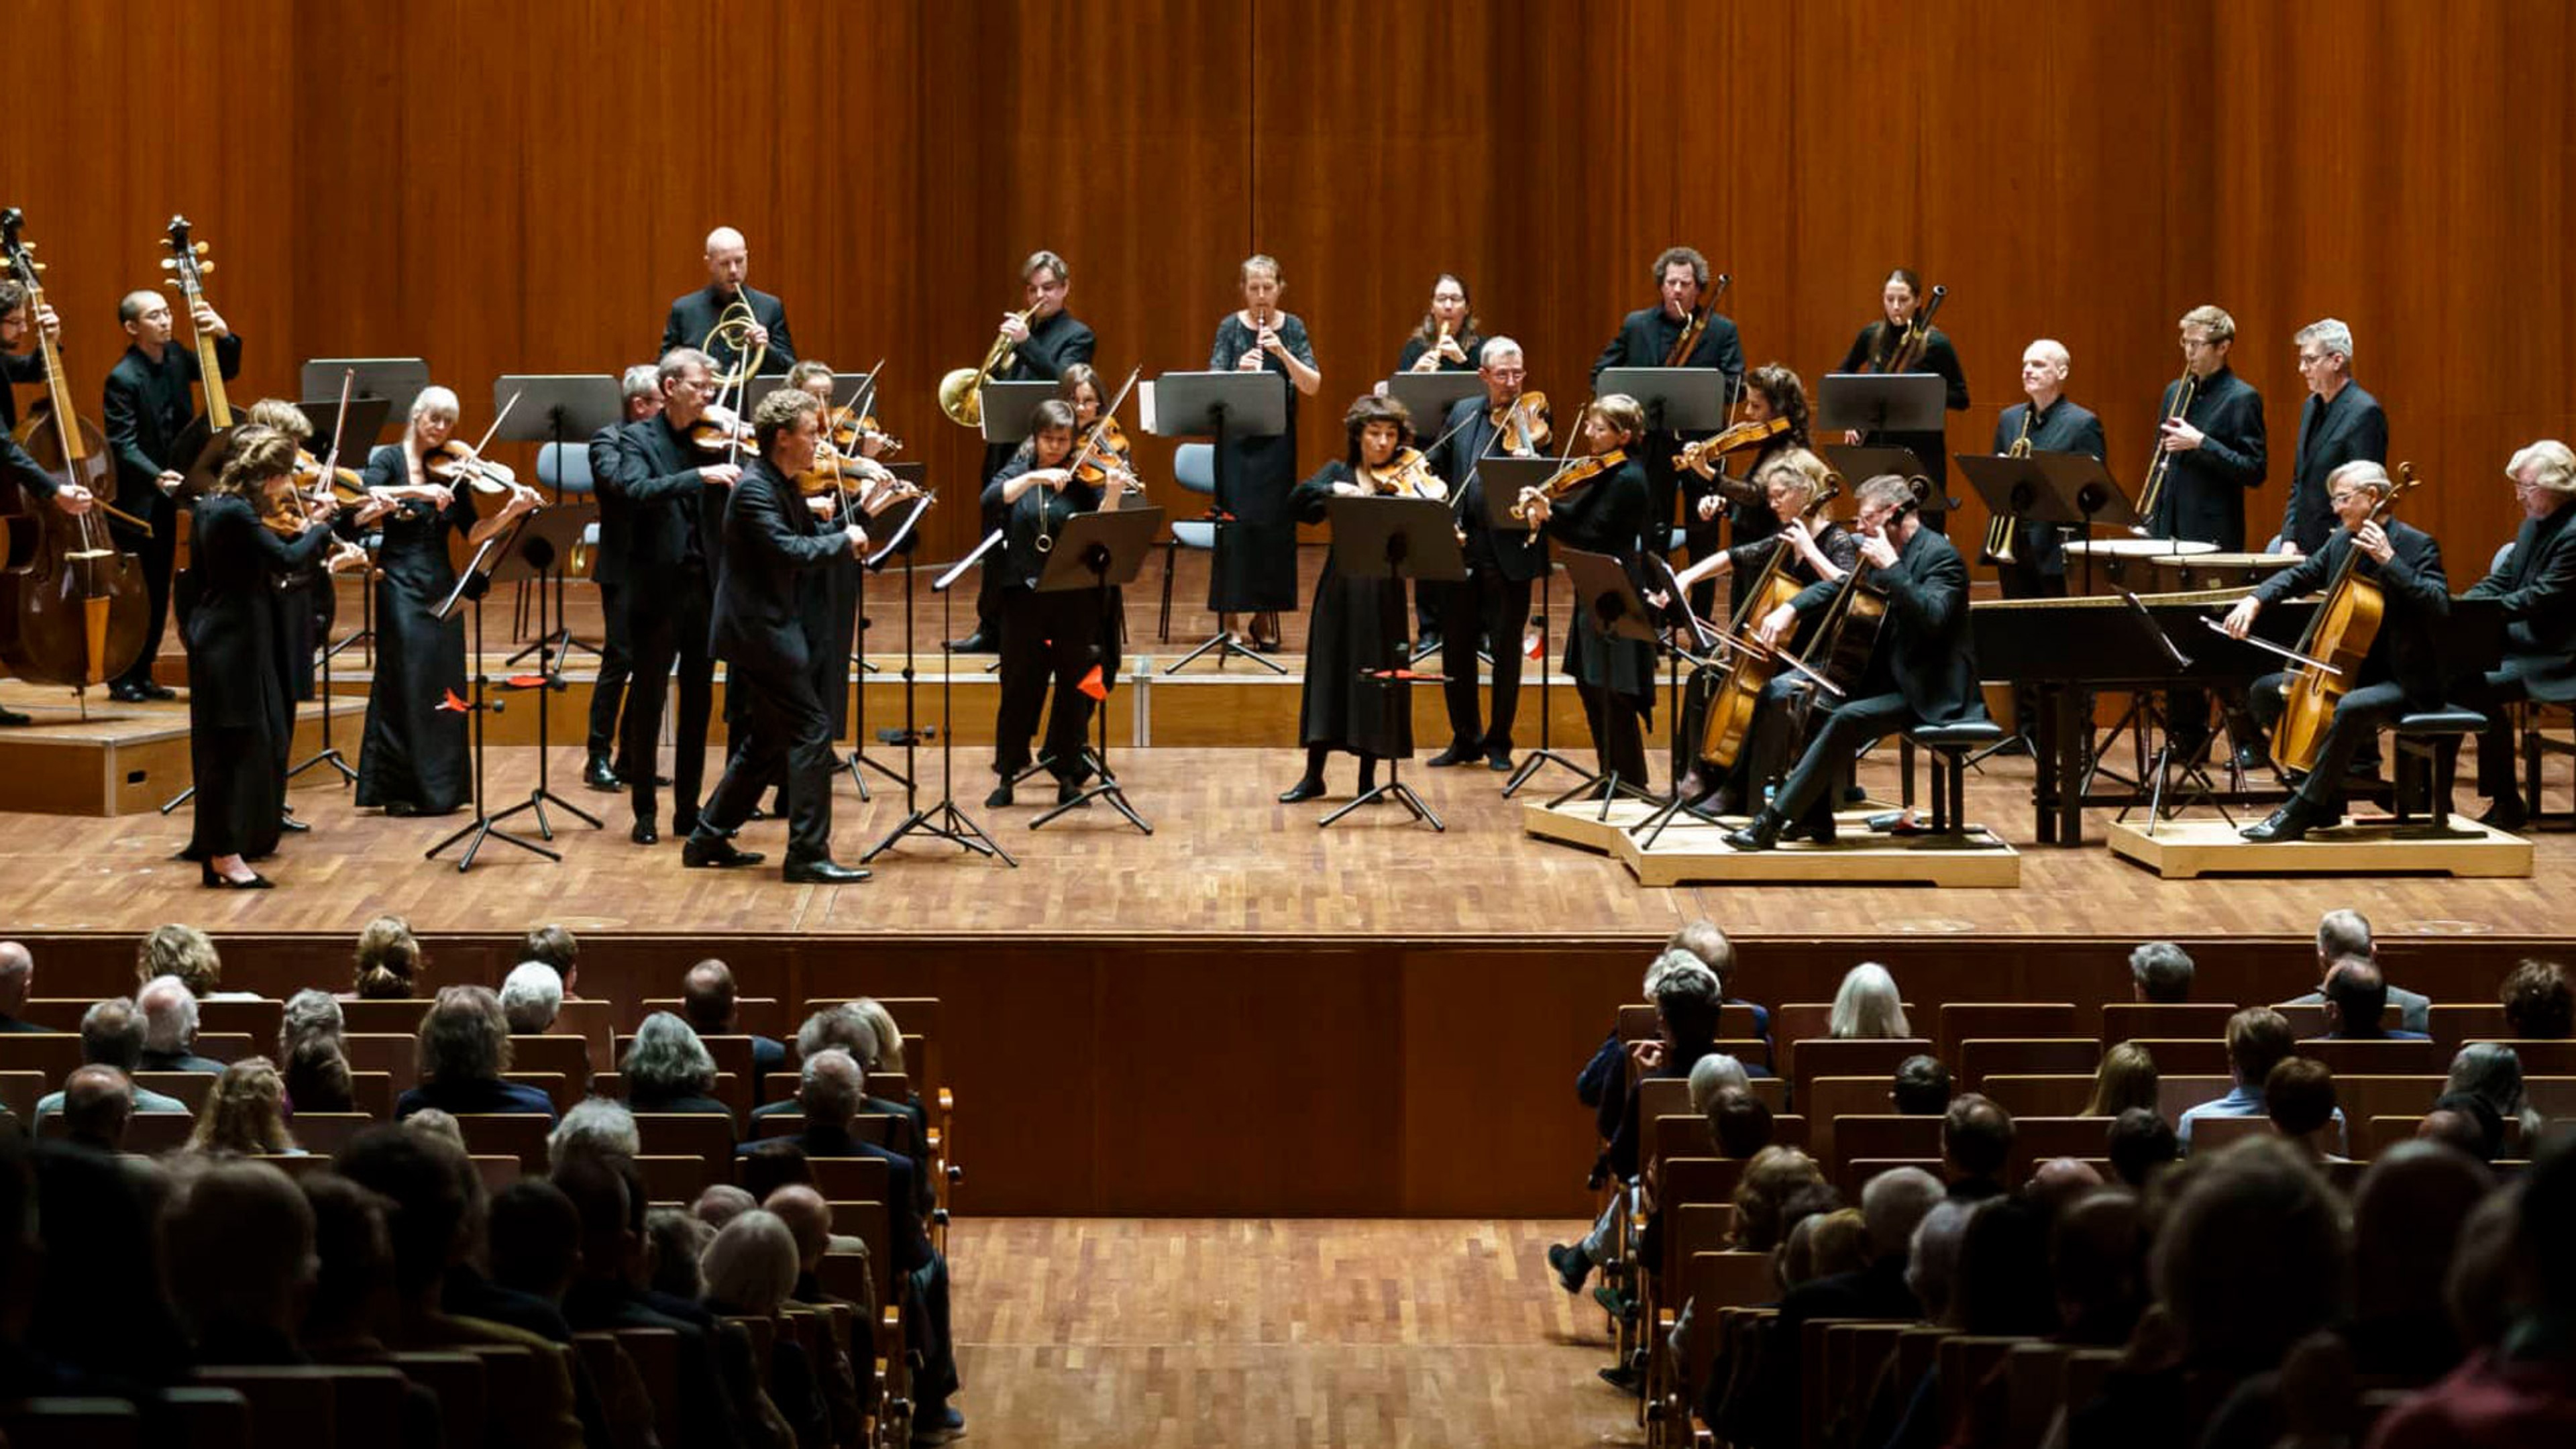 Orkester står på scenen med en orange bakgrund och framför en konsert med publik förgrunden